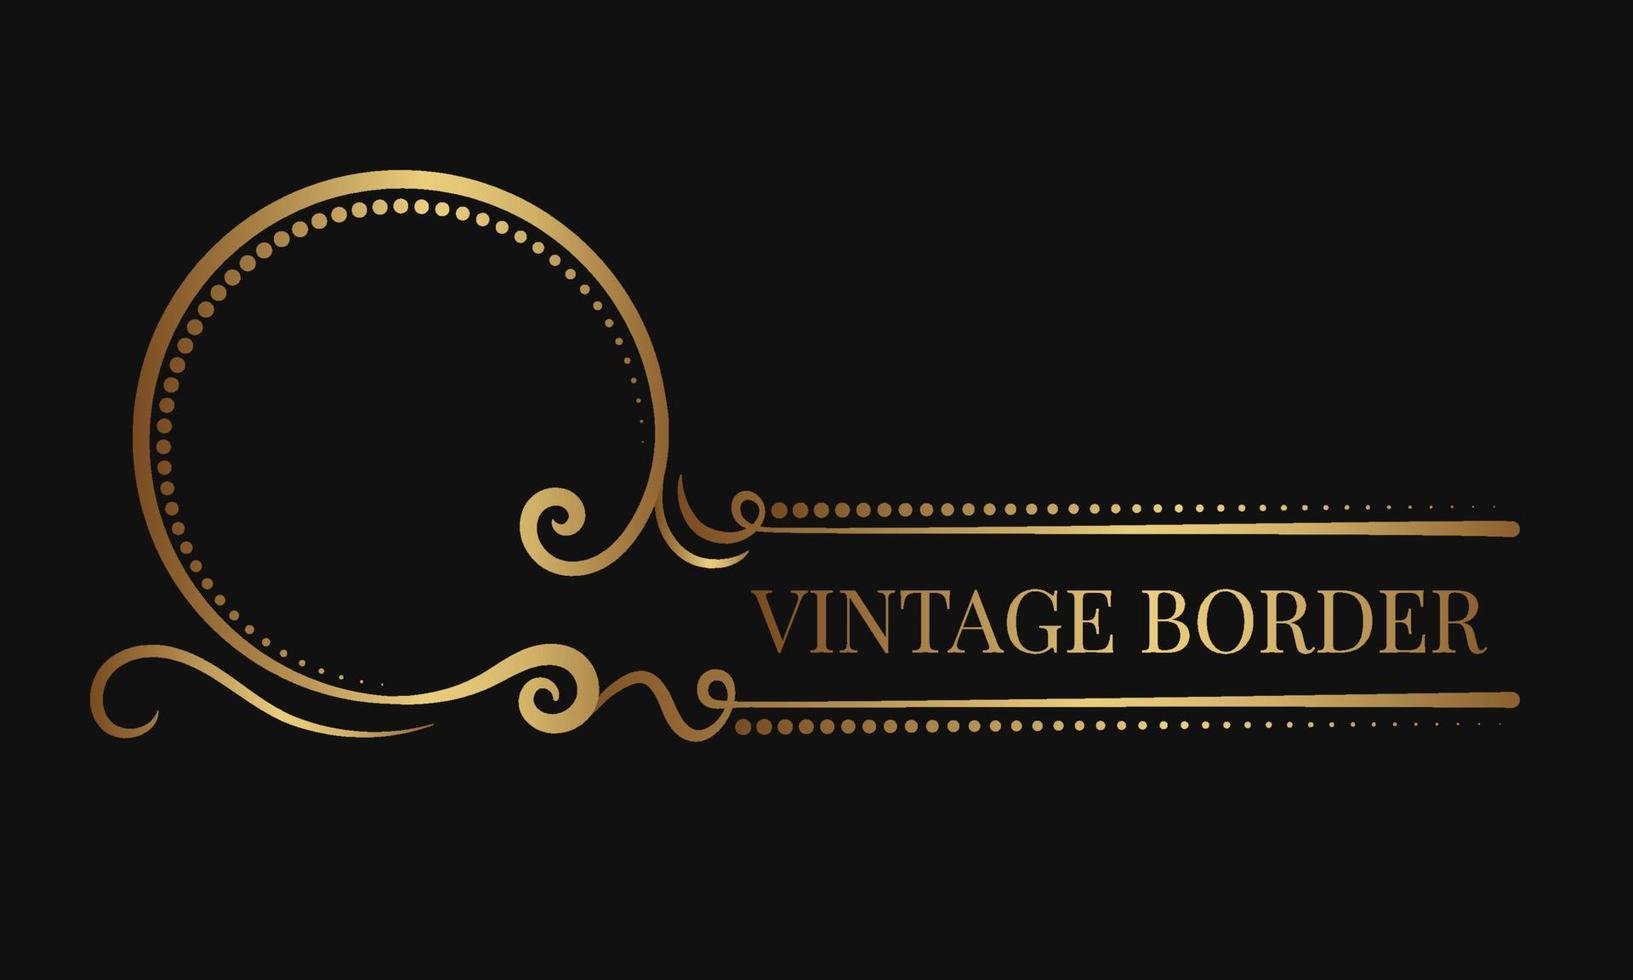 ornamento vintage, borda do logotipo, decoração de ouro vetor